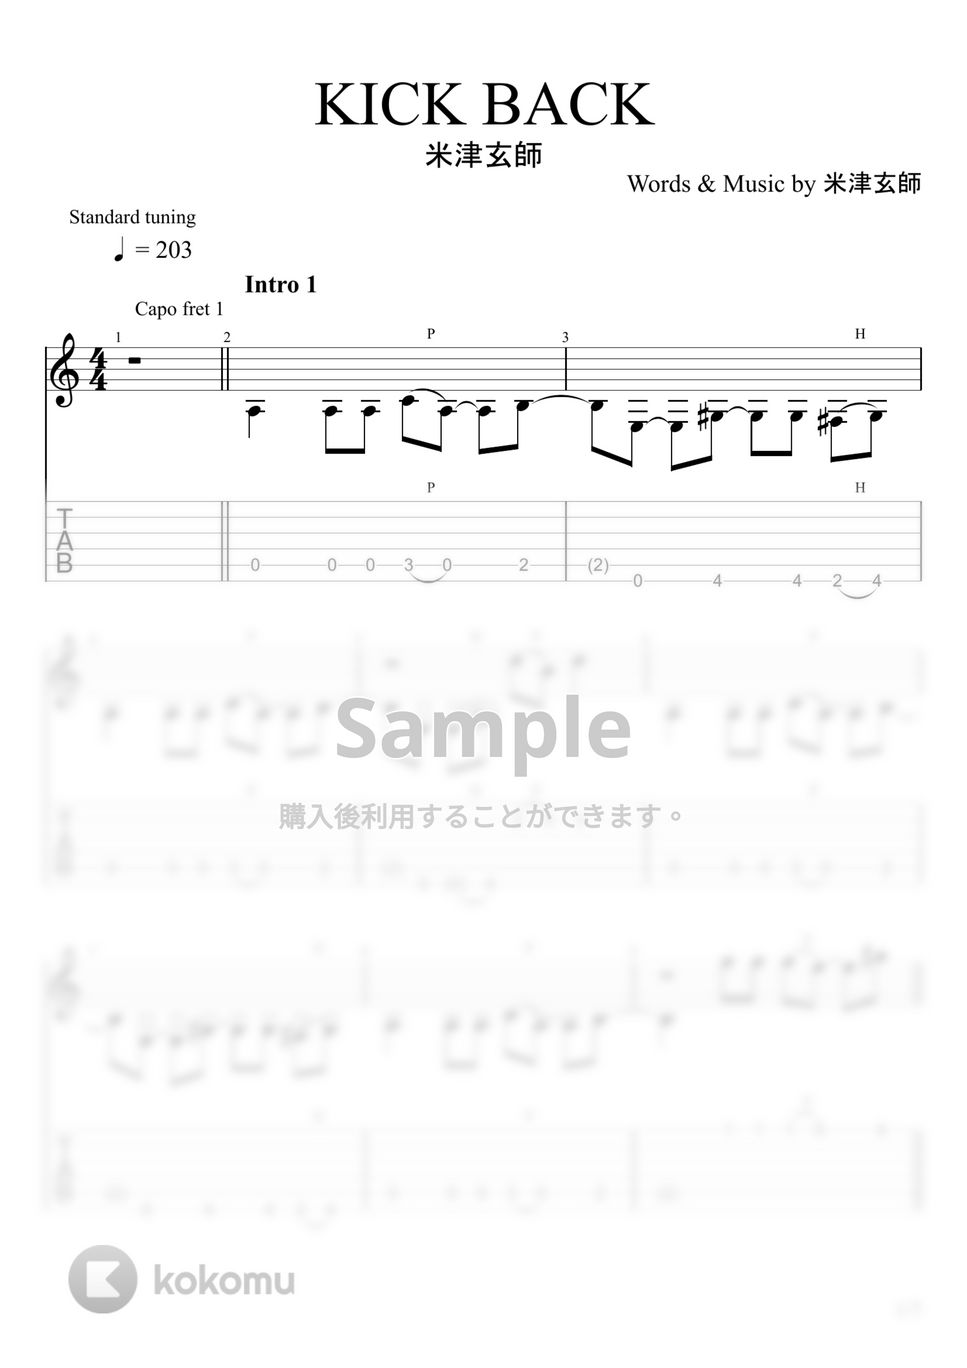 チェンソーマン - KICK BACK (ソロギター) by u3danchou